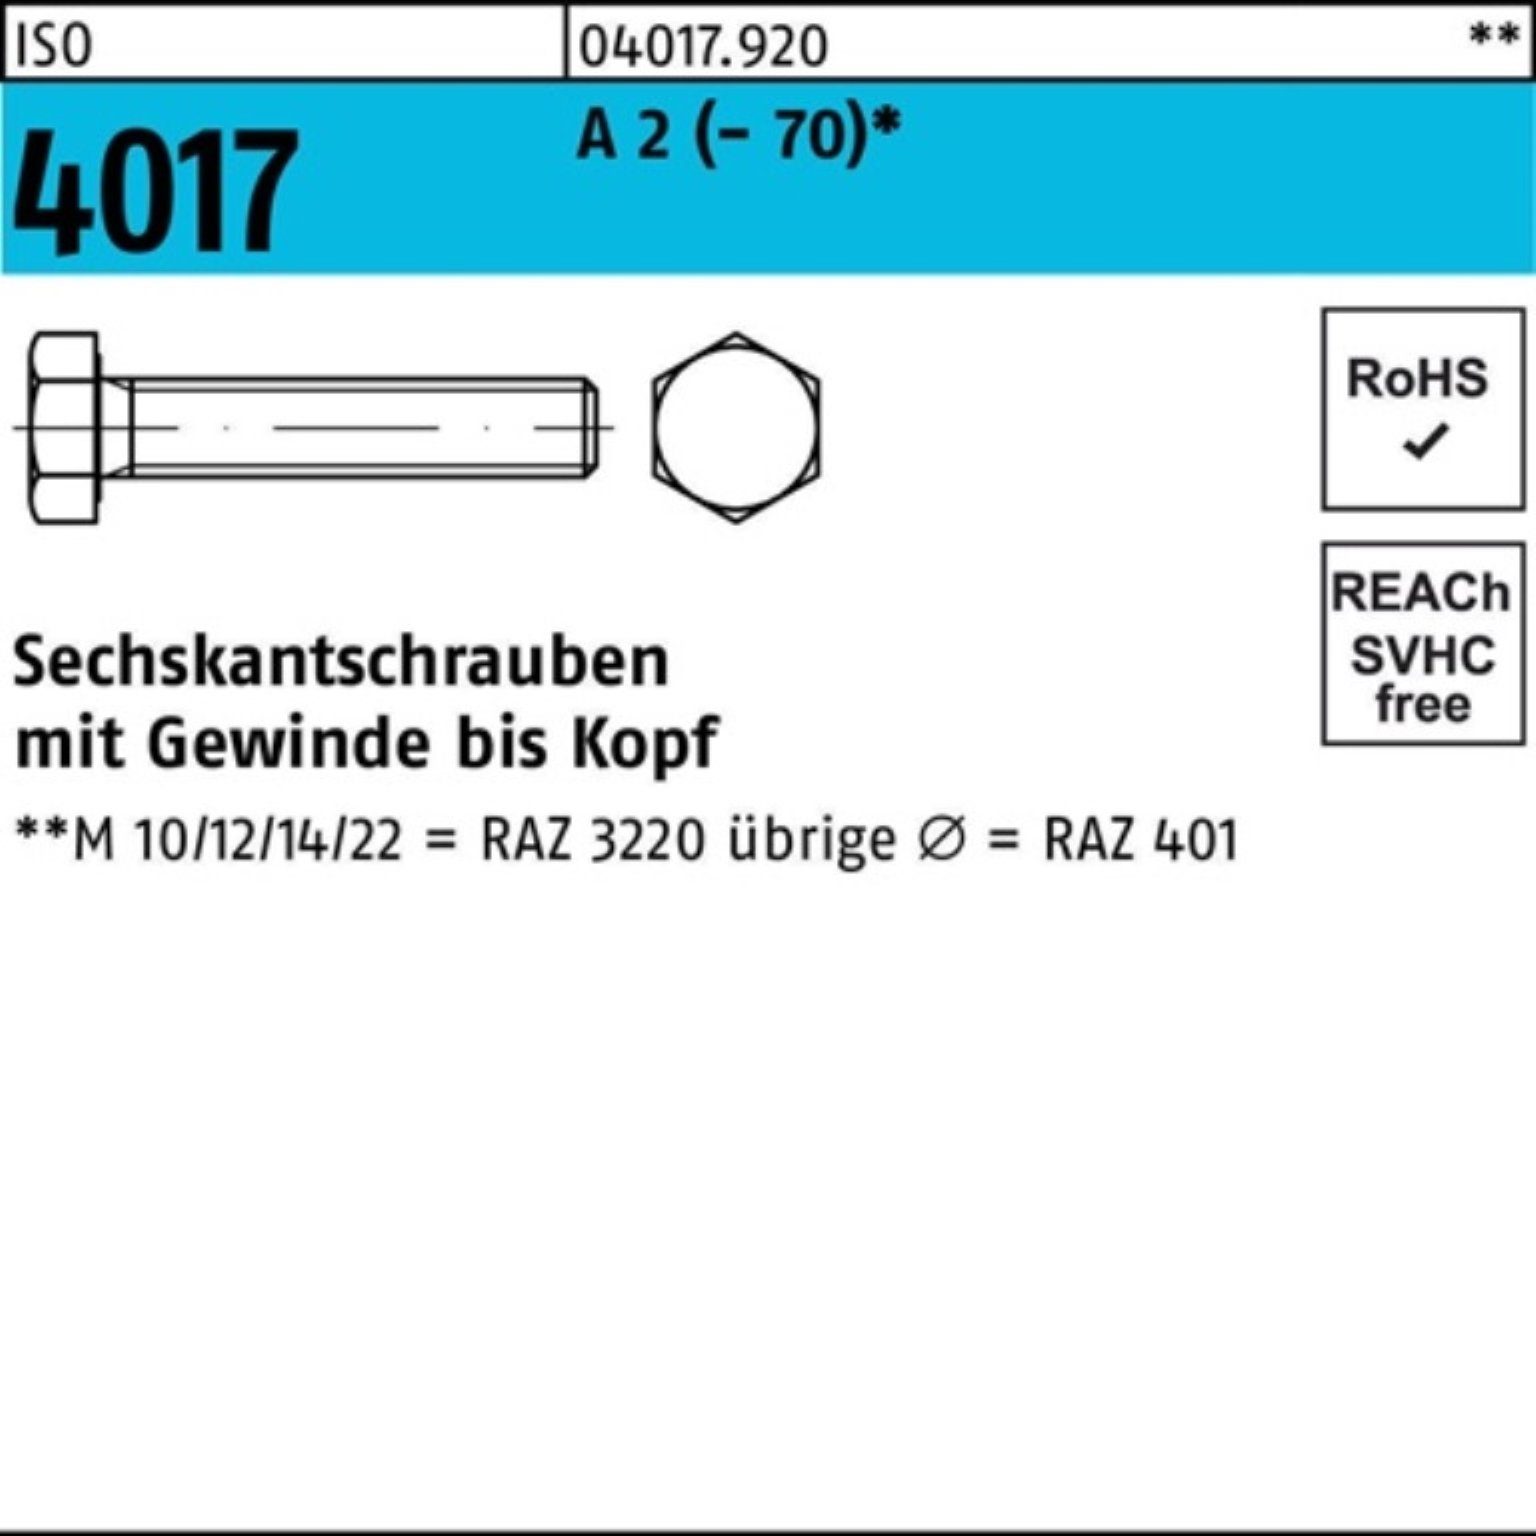 Bufab Sechskantschraube 100er Pack Sechskantschraube ISO 4017 VG M12x 100 A 2 (70) 50 Stück